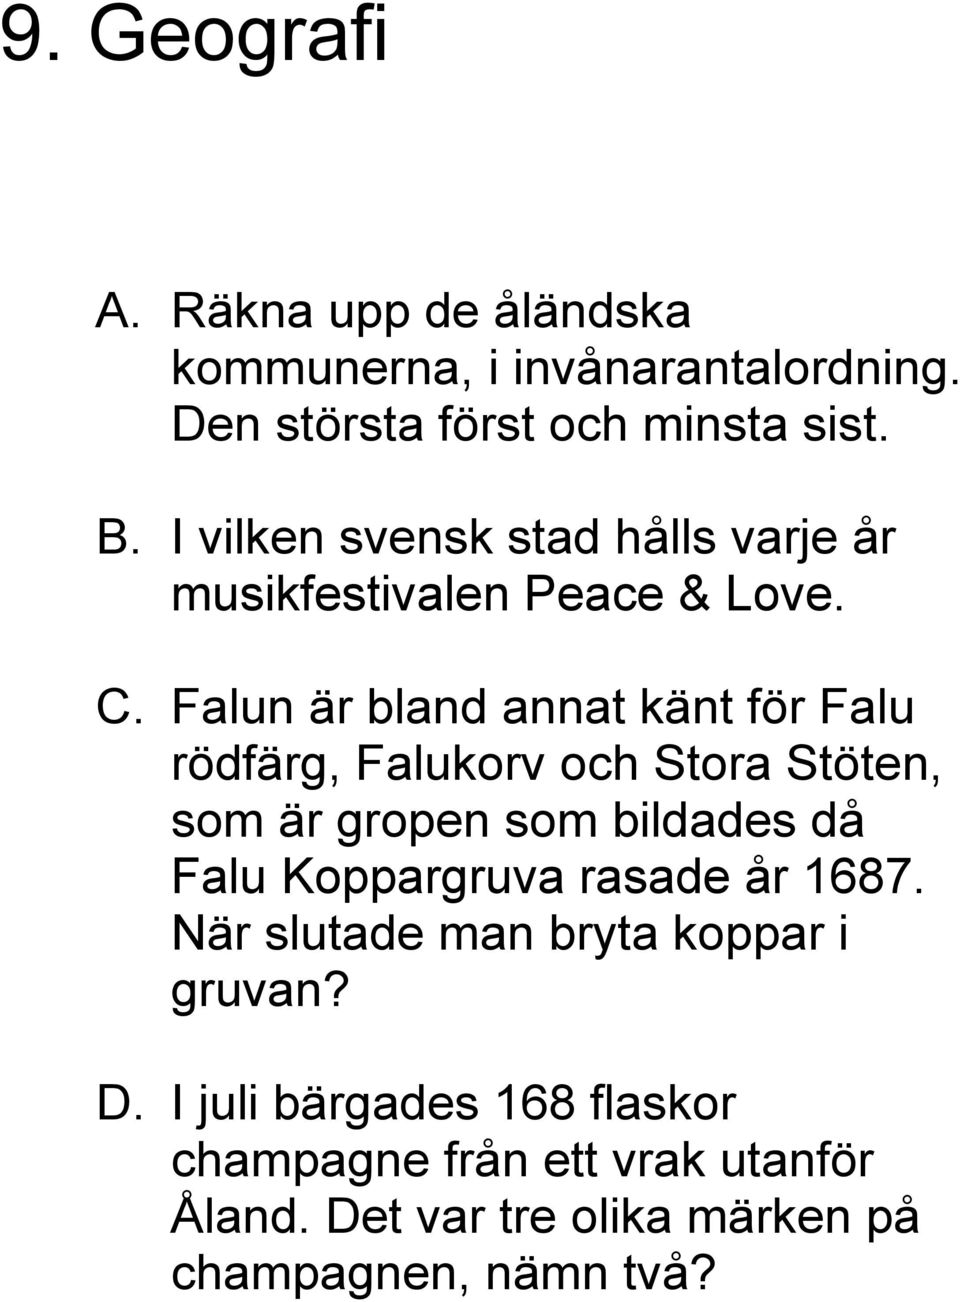 Falun är bland annat känt för Falu rödfärg, Falukorv och Stora Stöten, som är gropen som bildades då Falu Koppargruva